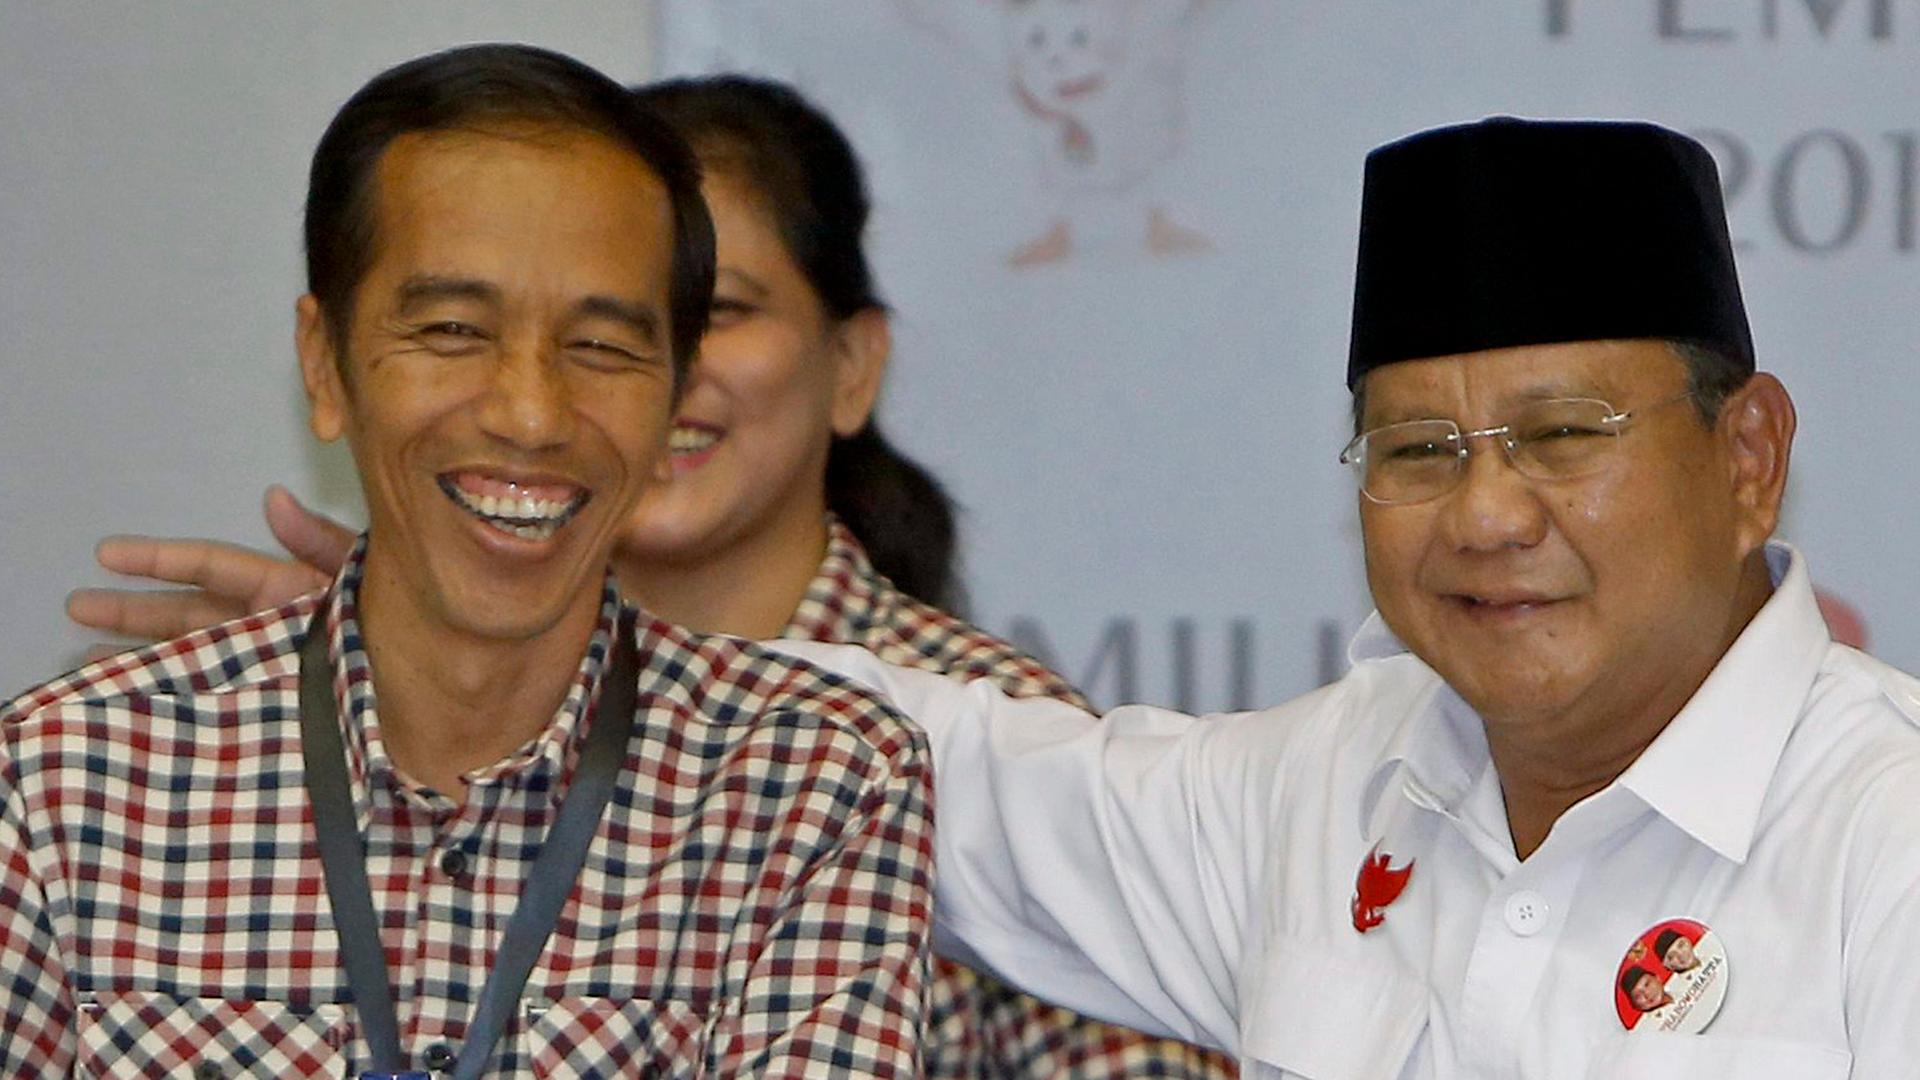 Die Kandidaten für die Präsidentschaftswahl in Indonesien am 9. Juli 2014: Joko Widodo (links) und Prabowo Subianto (rechts), aufgenommen am 1. Juni 2014.